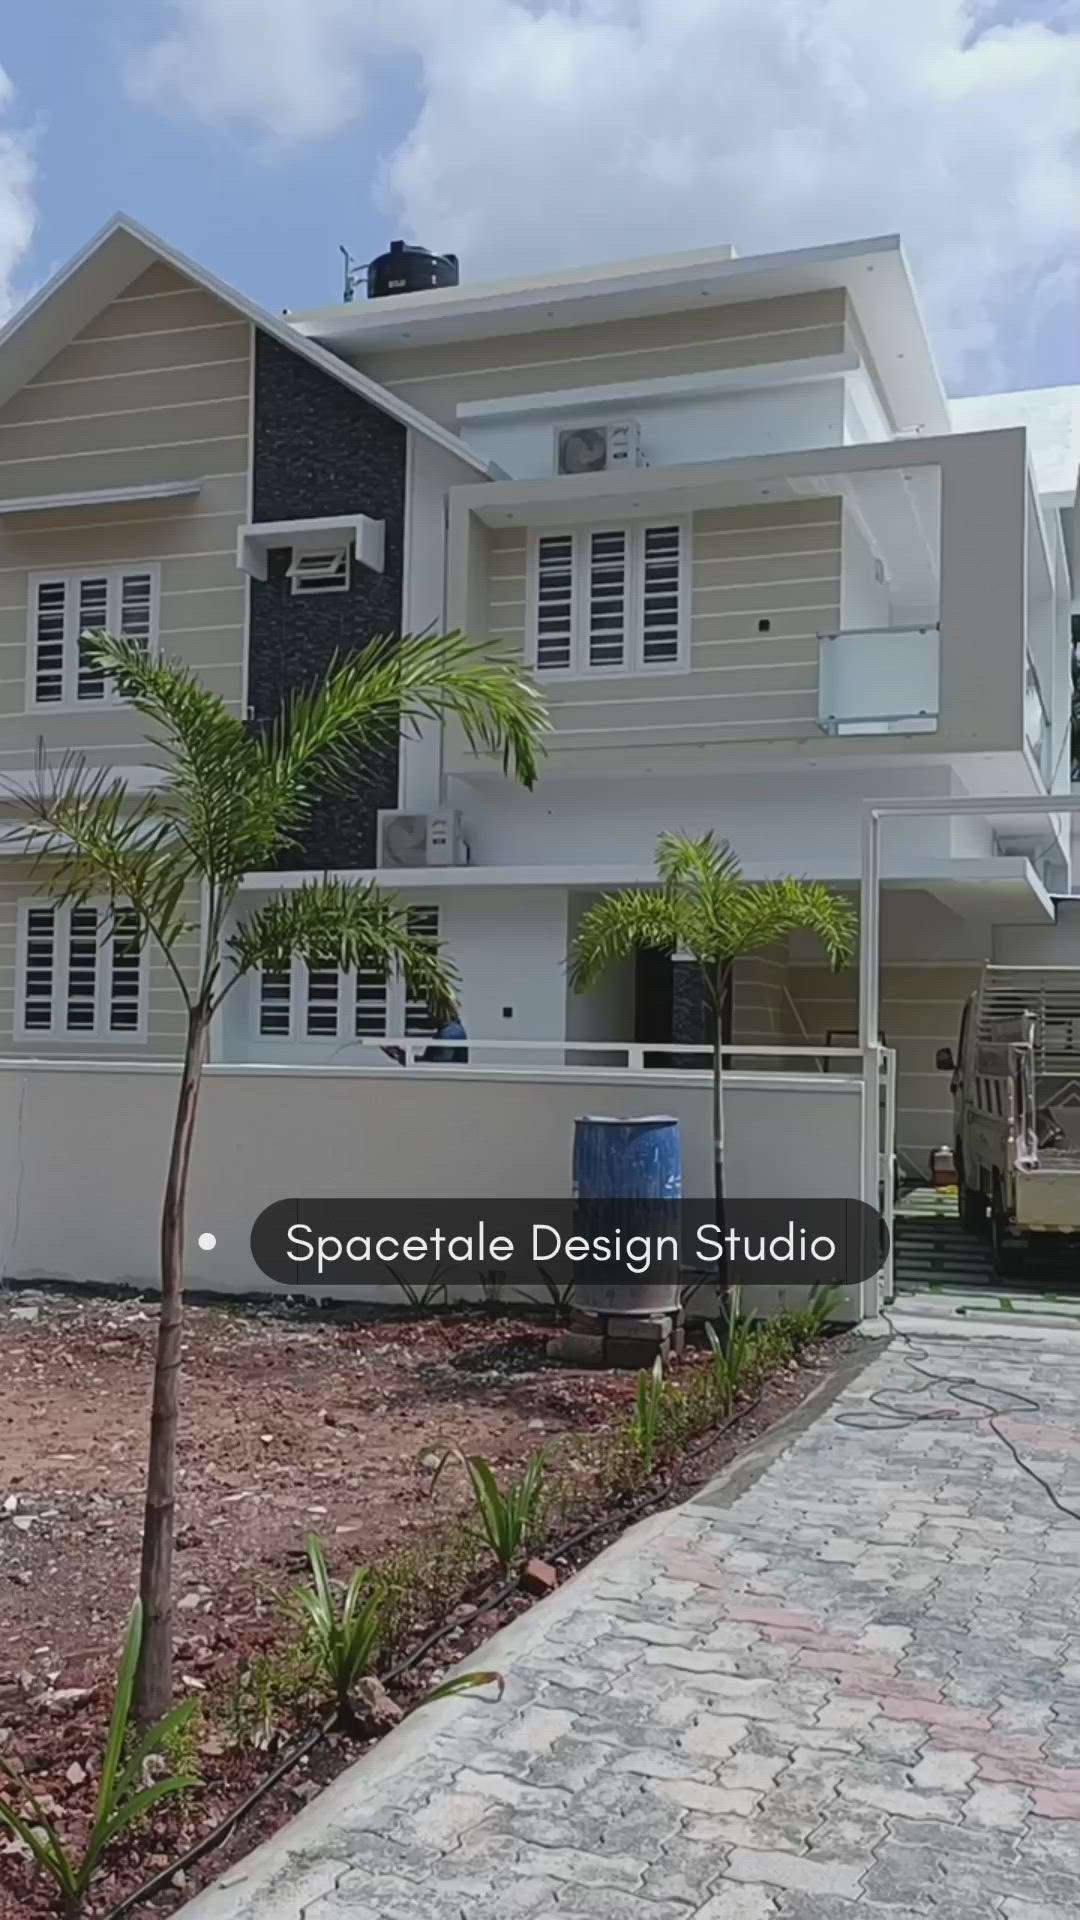 Full Architecture and interior designing support
Spacetale Design Studio 
call : 9562272295